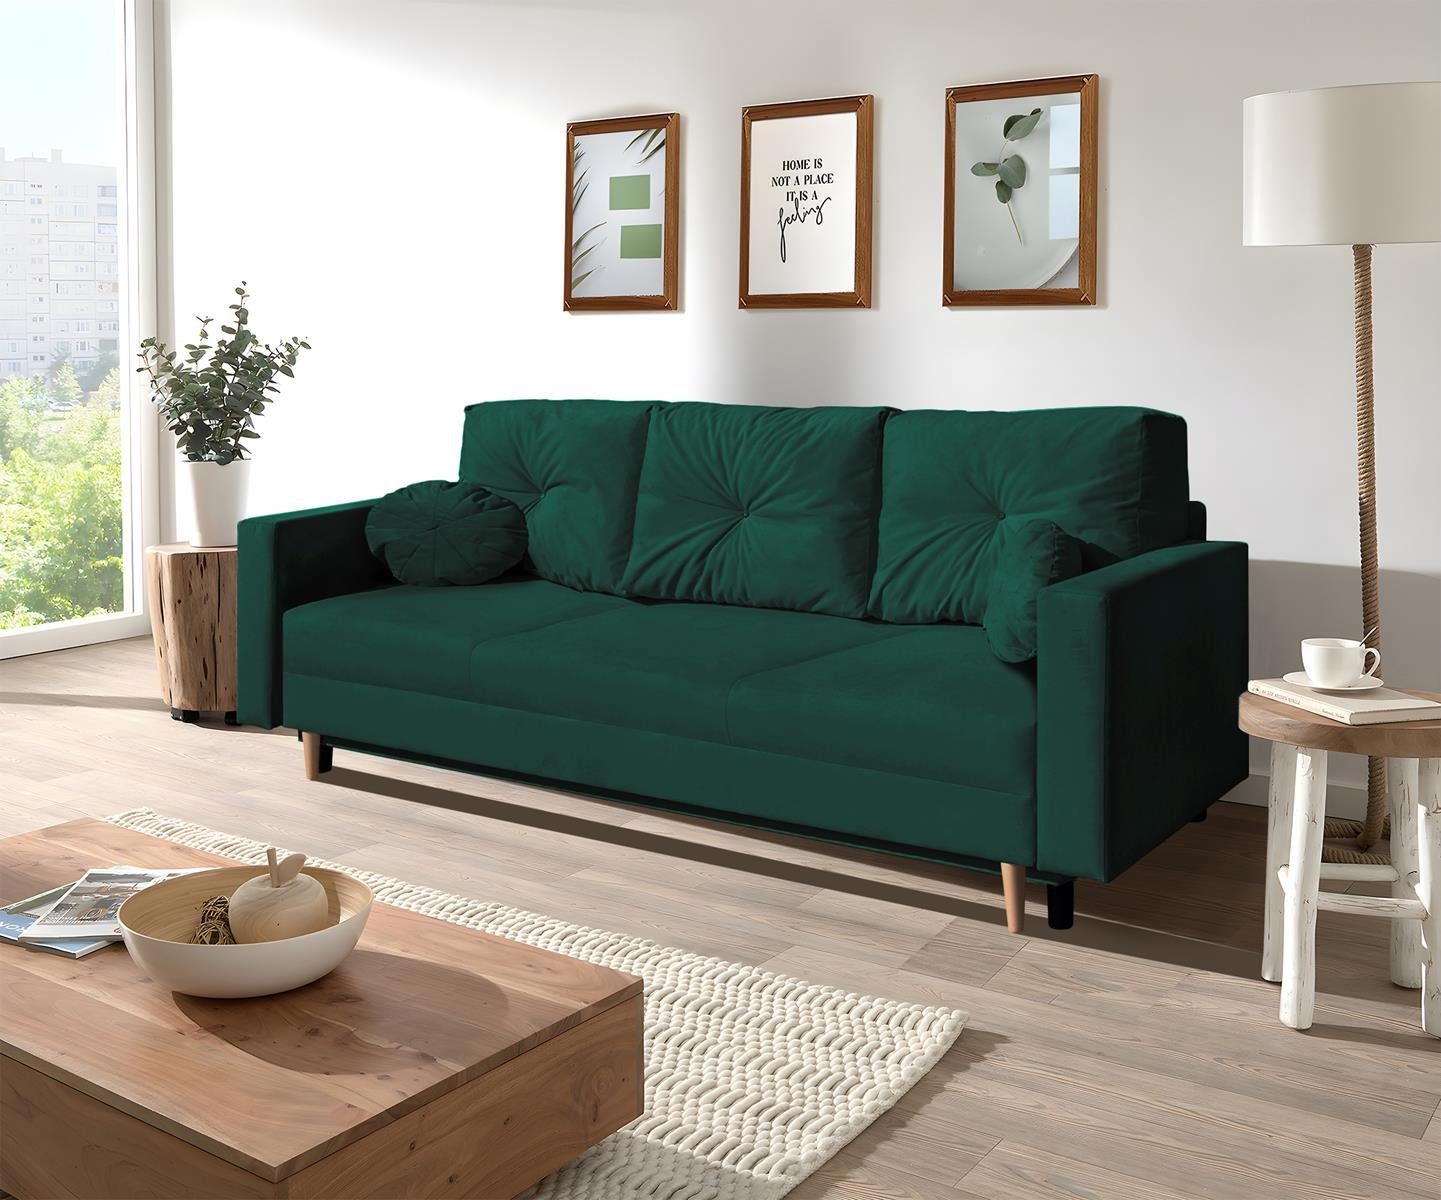 Beautysofa 3-Sitzer MILAN, skandinavisches Design, Wellenunterfederung, Bettkasten, Holzbeine, 3-Sitzer Sofa mit Relaxfunktion Flasches grün (trinity 28)